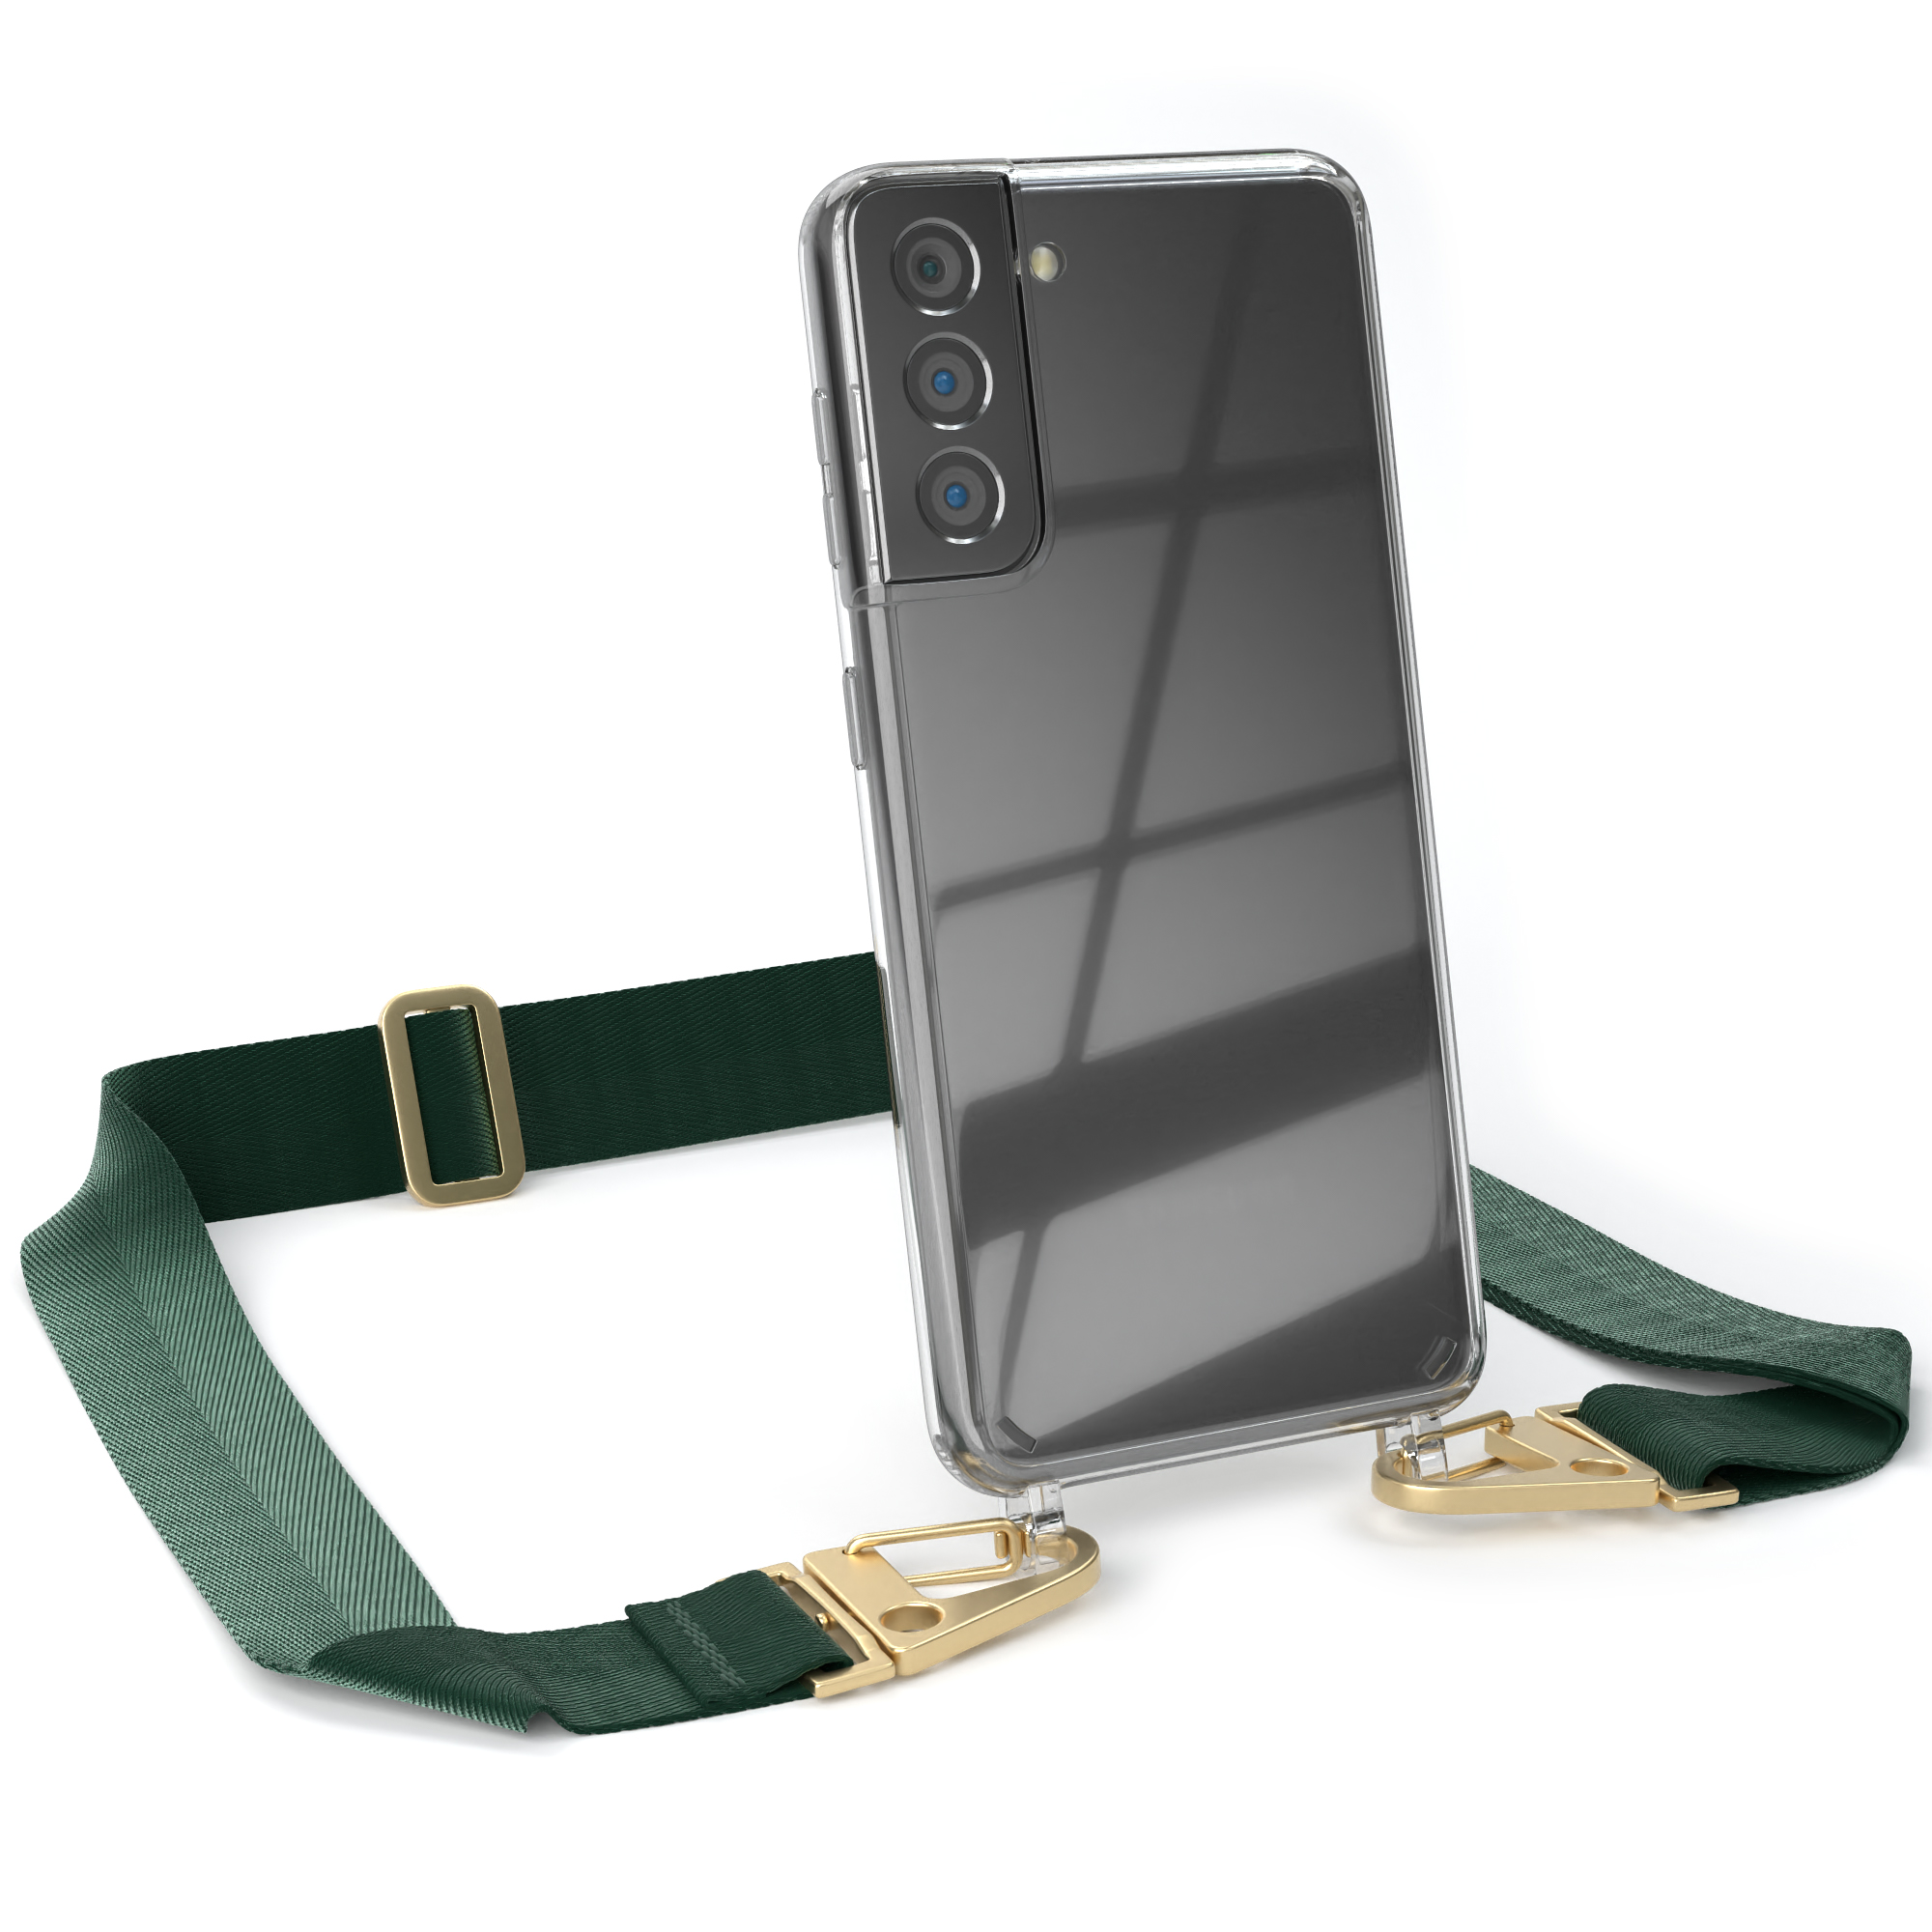 EAZY CASE Transparente Handyhülle mit 5G, Karabiner, Dunkel Galaxy S21 + Samsung, Umhängetasche, / Kordel breiter Gold Grün